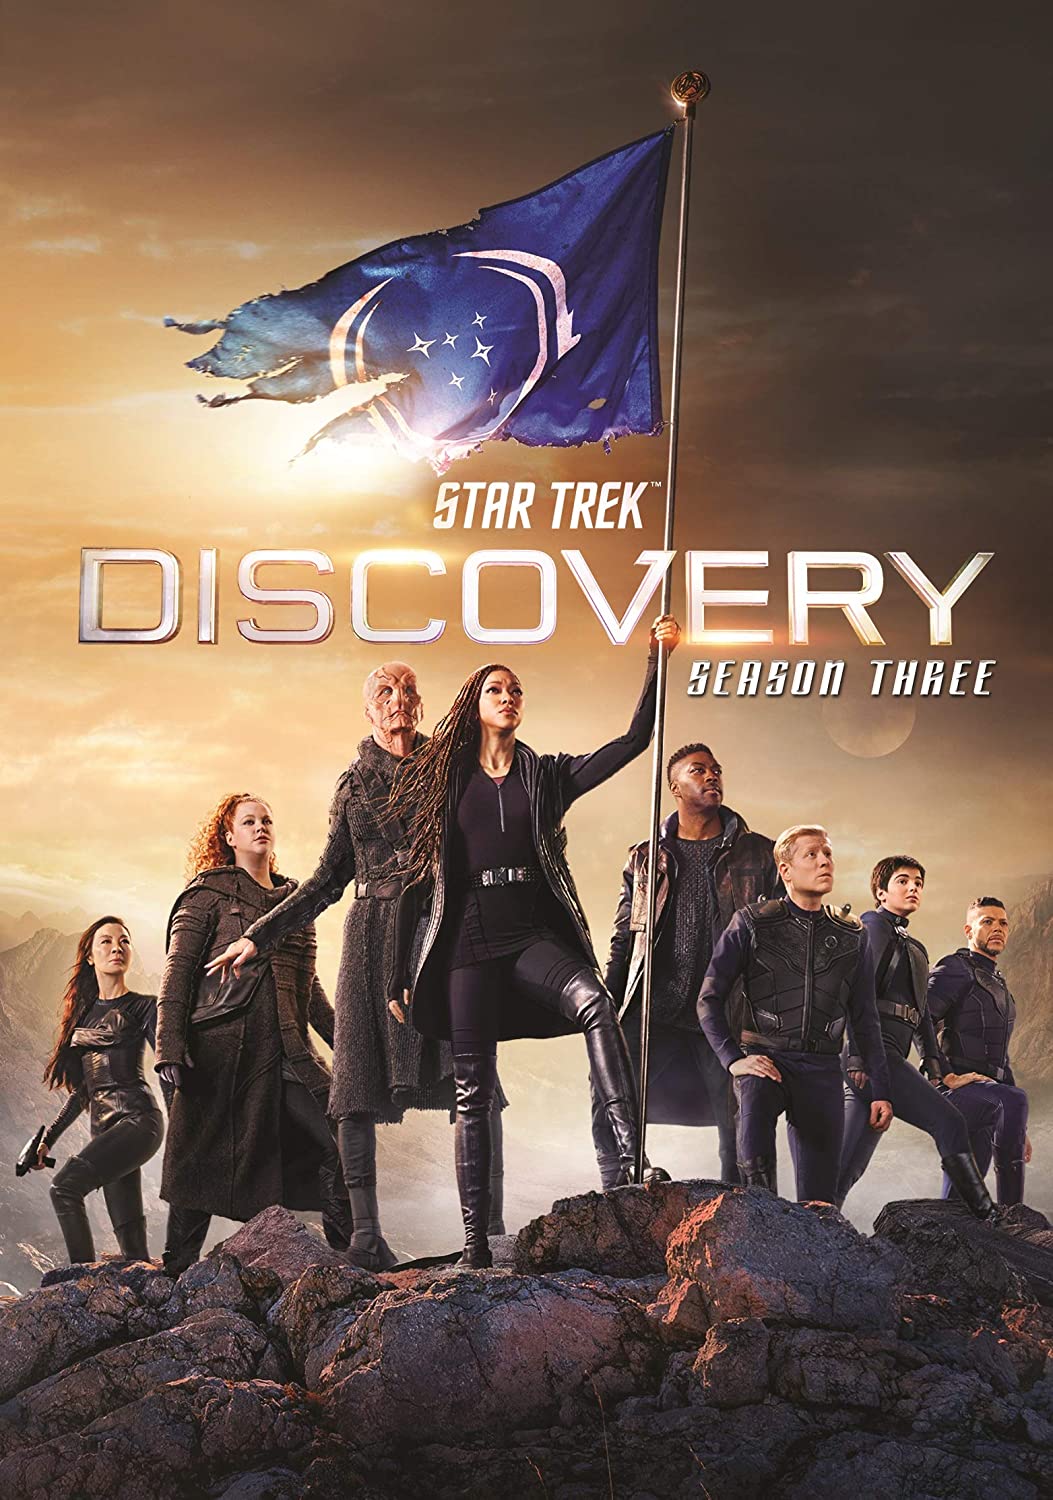 ดูหนังออนไลน์ฟรี Star Trek Discovery Season 3 EP11 สตาร์ เทรค ดิสคัฟเวอรี่ ซีซั่นที่ 3 ตอนที่ 11